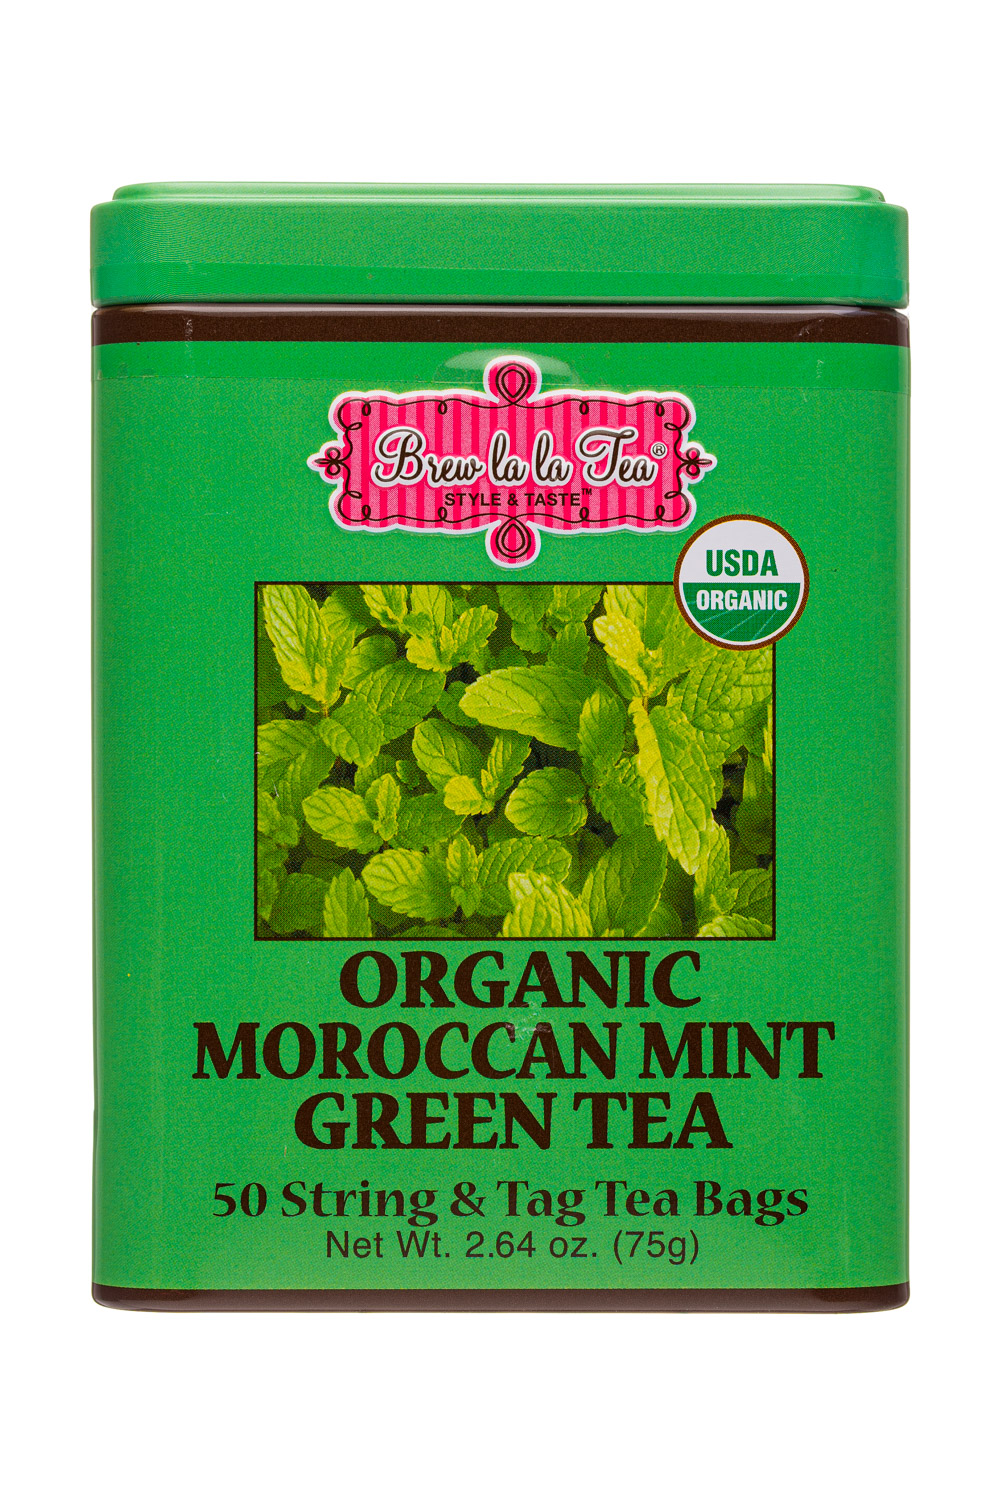 Brew la la Chamomile Lemon Green Tea USDA Organic (Fair Trade